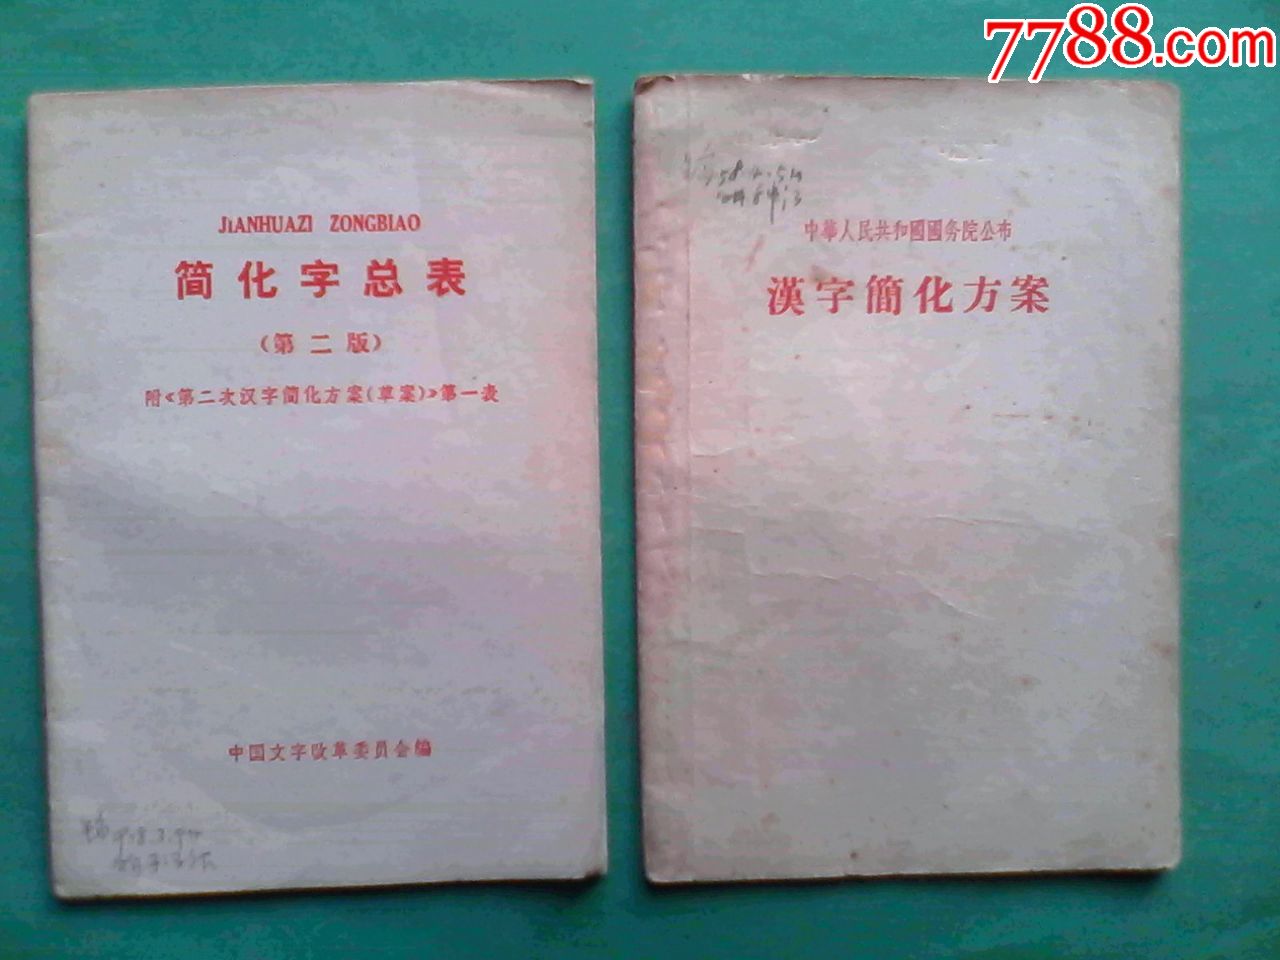 汉字简化方案,简化字总表(第二版)繁体字,共2本